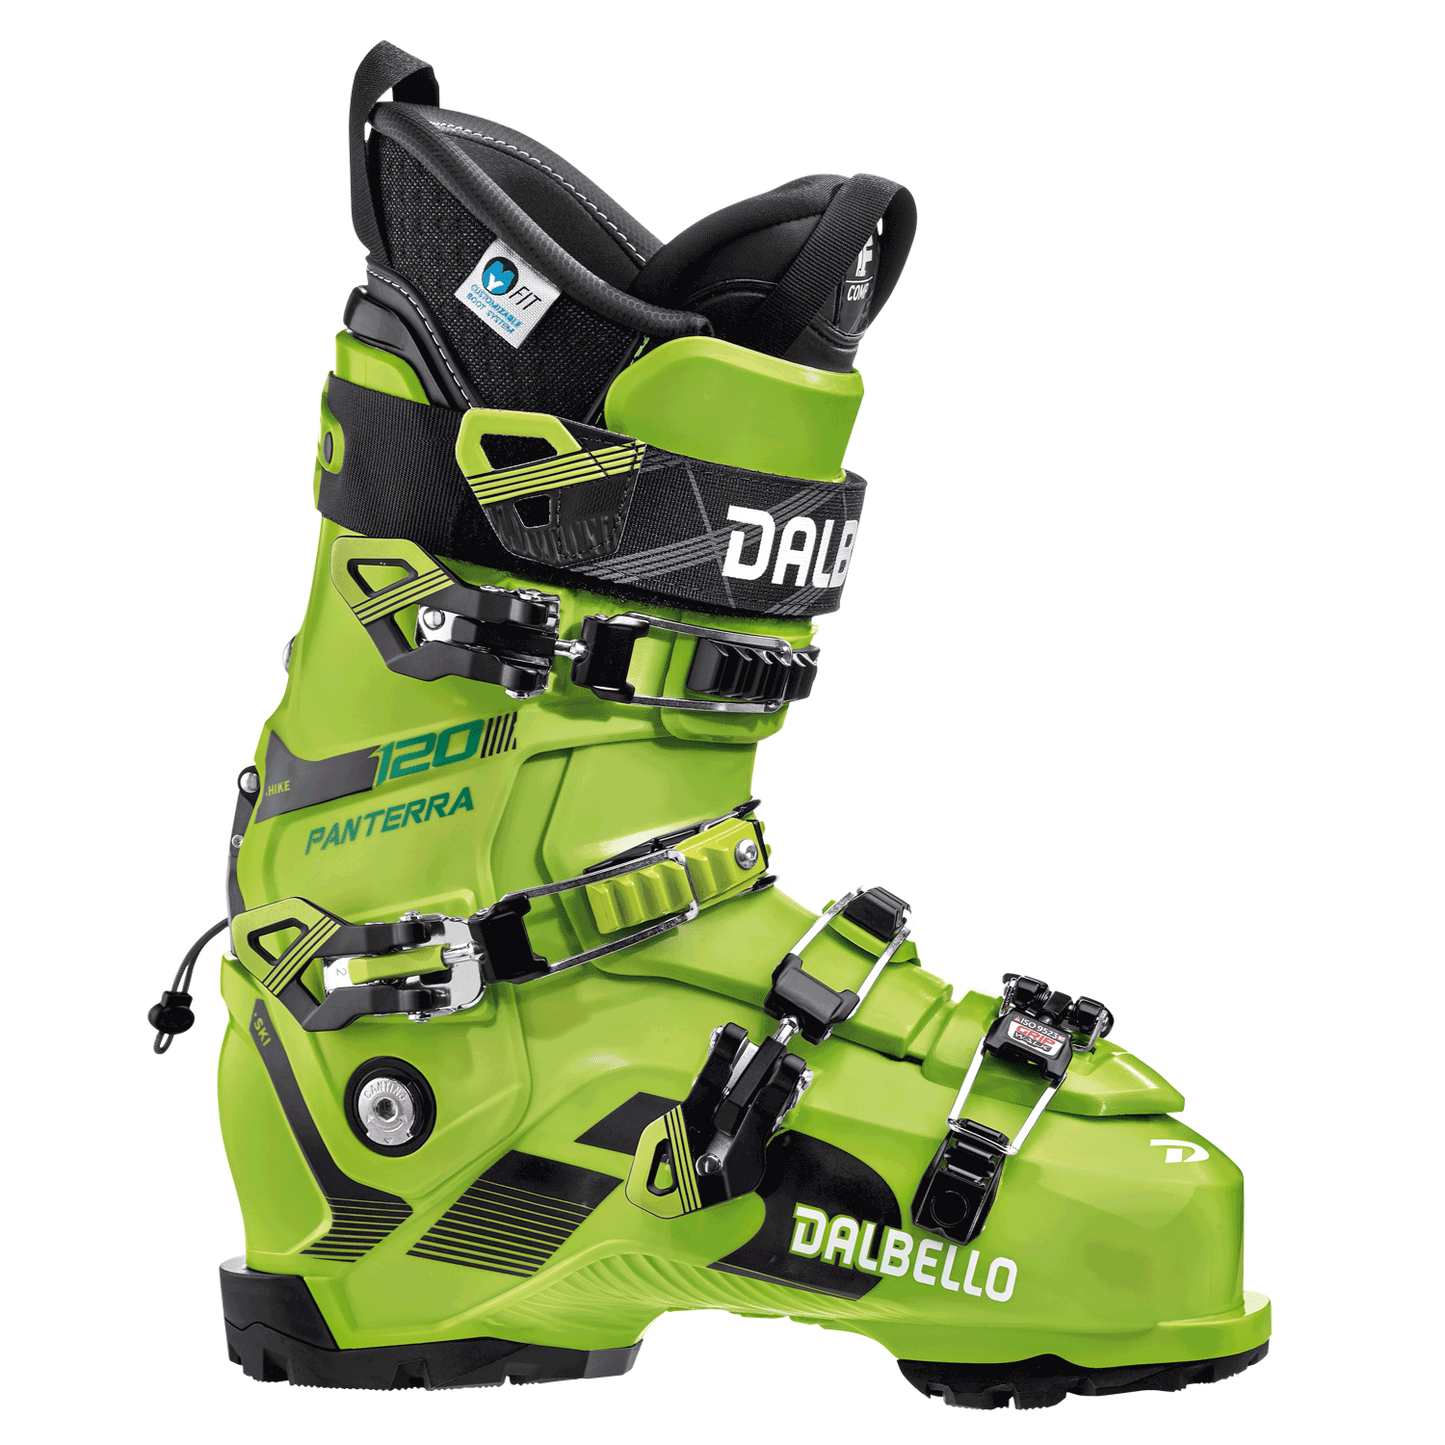 Scarponi da sci Dalbello Panterra 120 GW All mountain ski boots flex 120